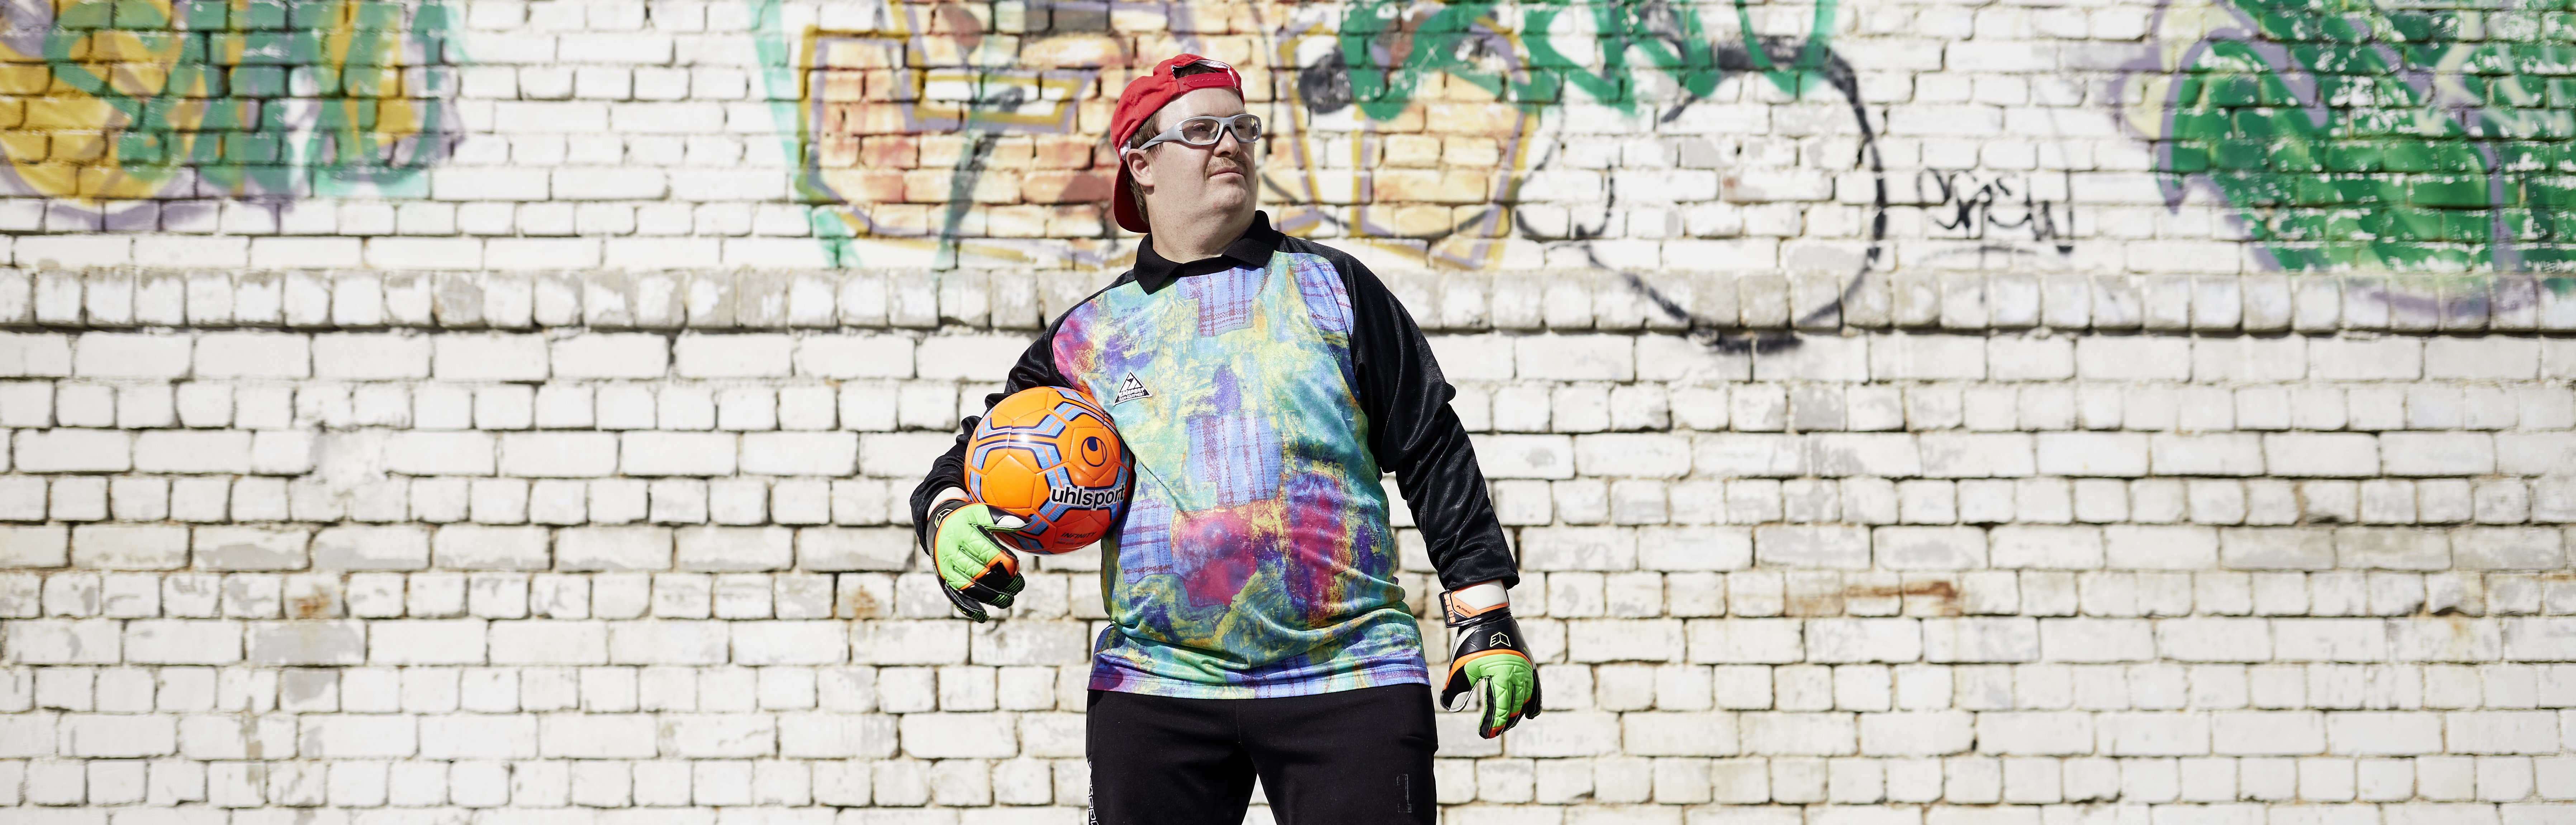 Ein junger Mann in sportlicher Kleidung steht vor einer Graffiti-Wand und hält einen Ball unter dem Arm.